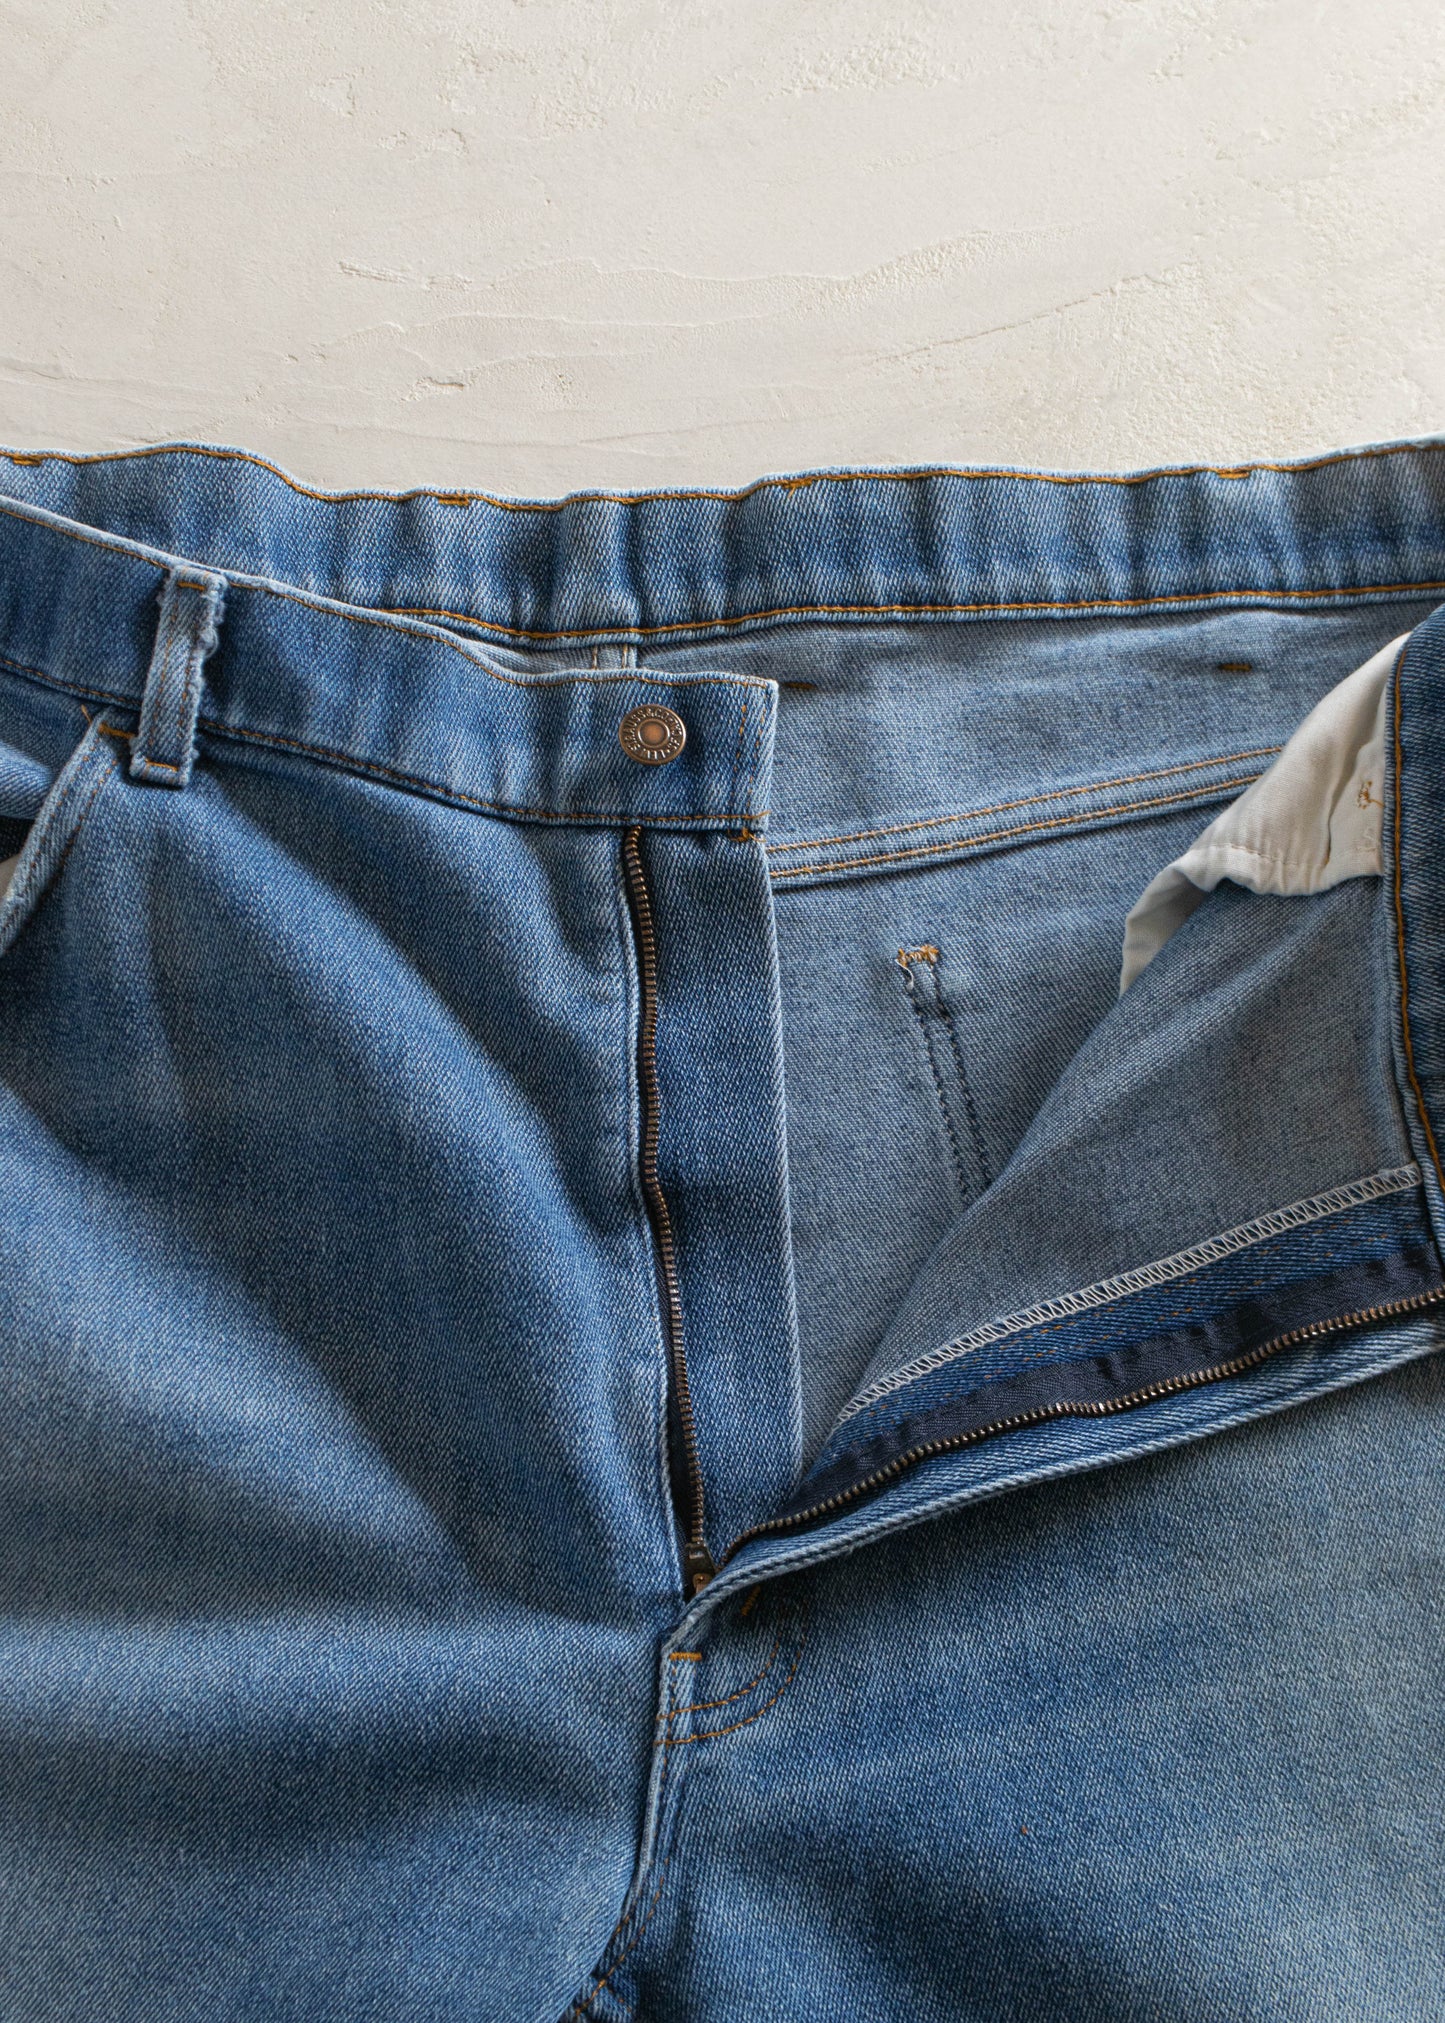 Vintage 1980s Levi's Midwash Jeans Size Women's 34 Men's 36